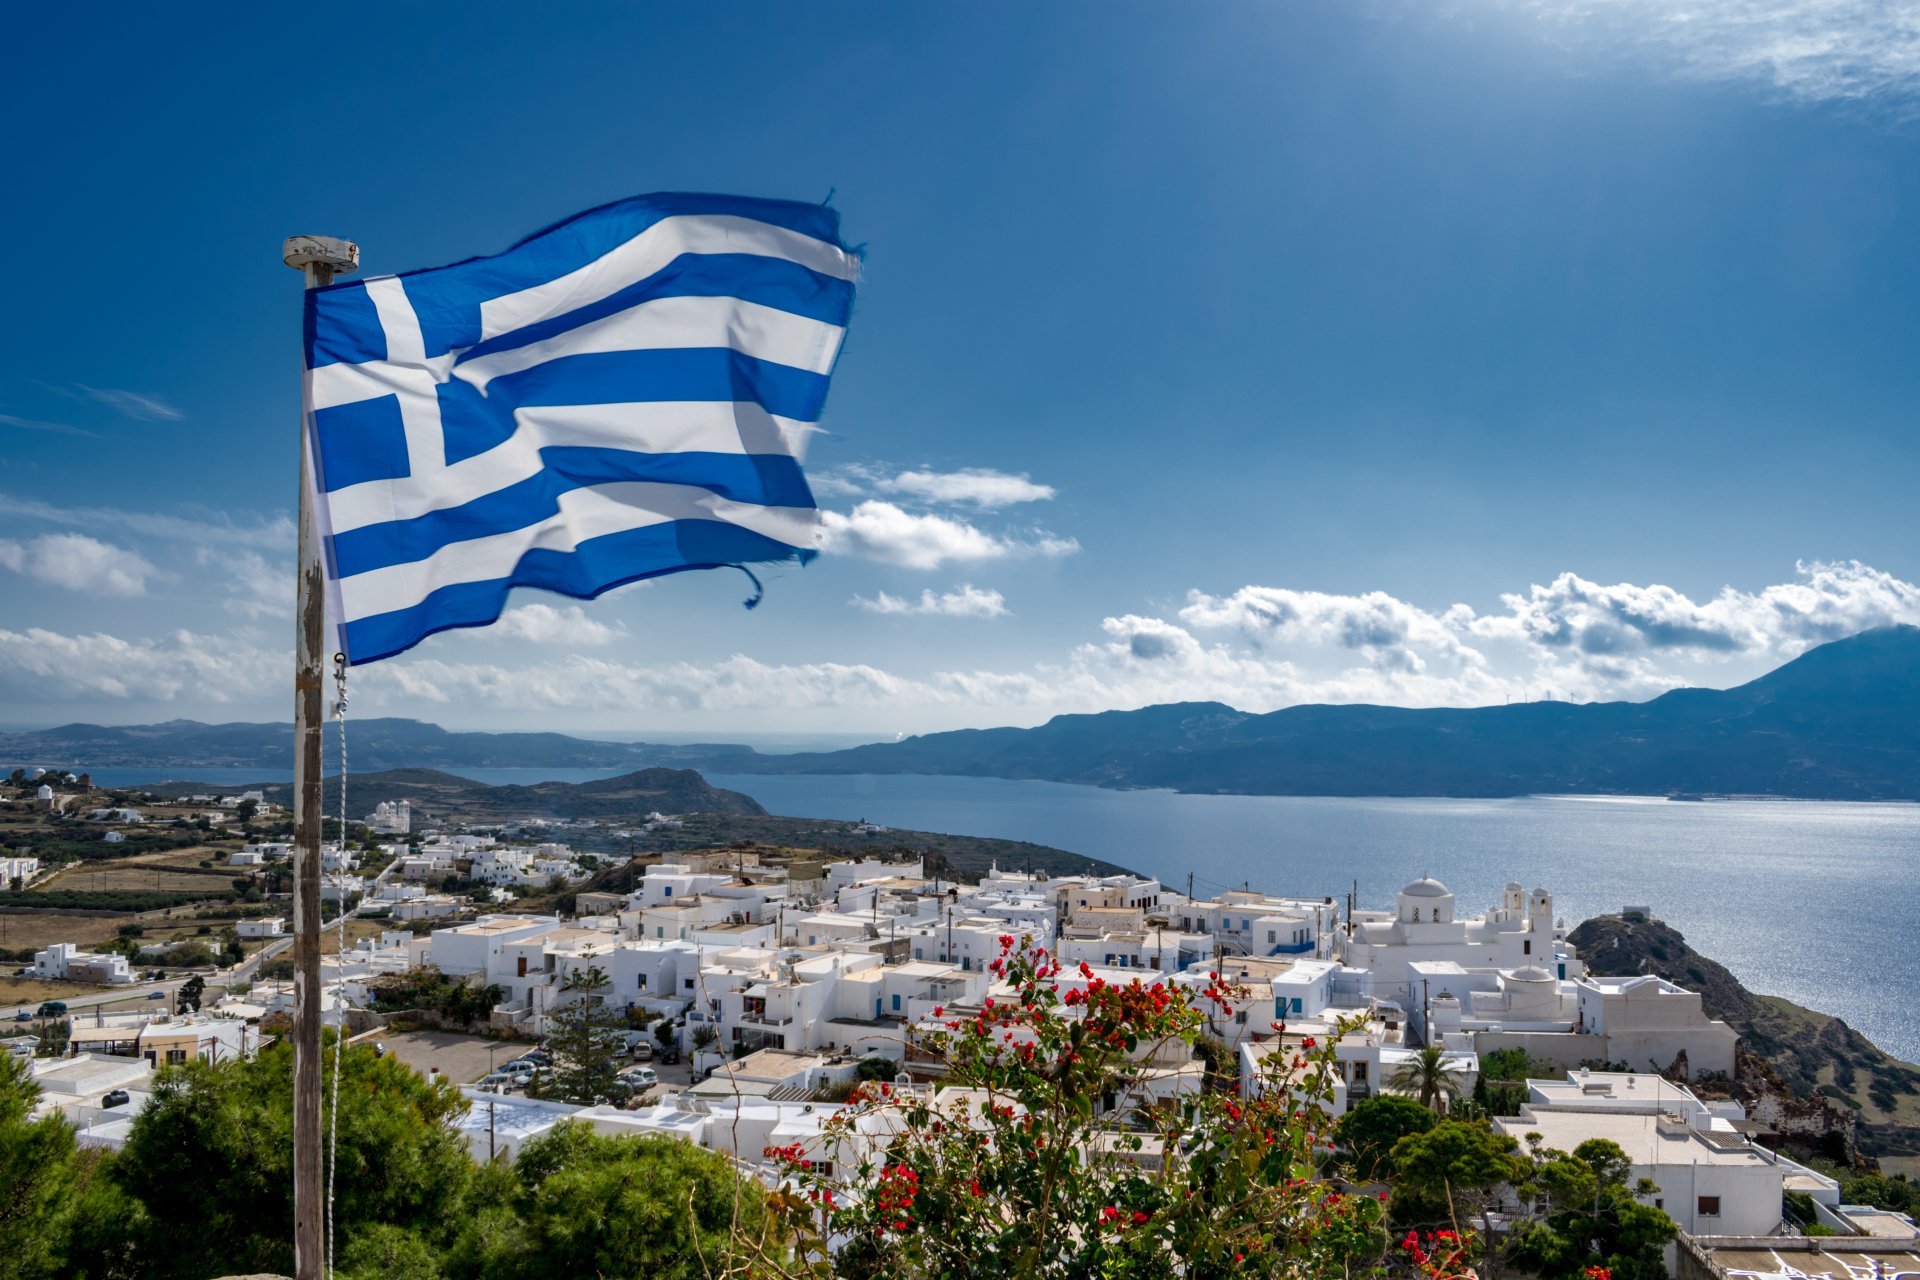 И Гърция скръцна със зъби на РСМ